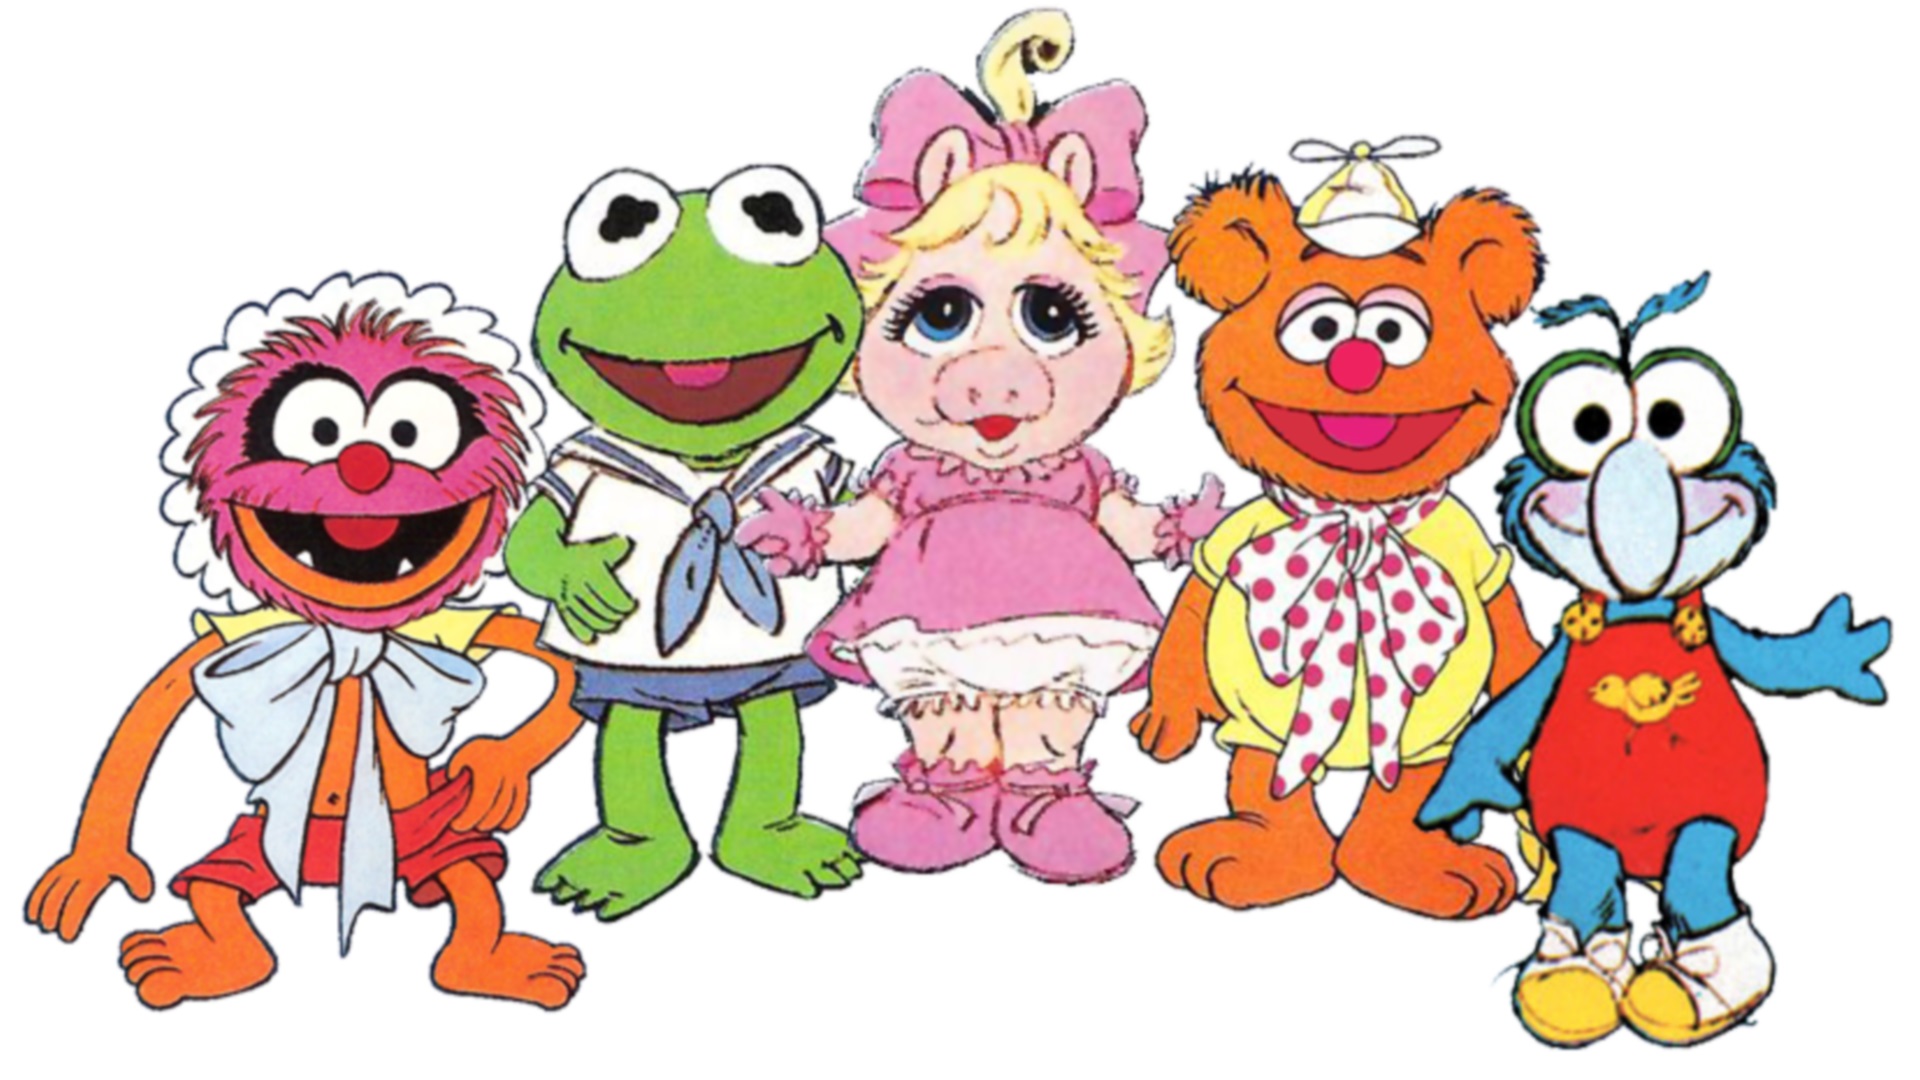 Muppet Babies (TV Series 1984 - 1990)